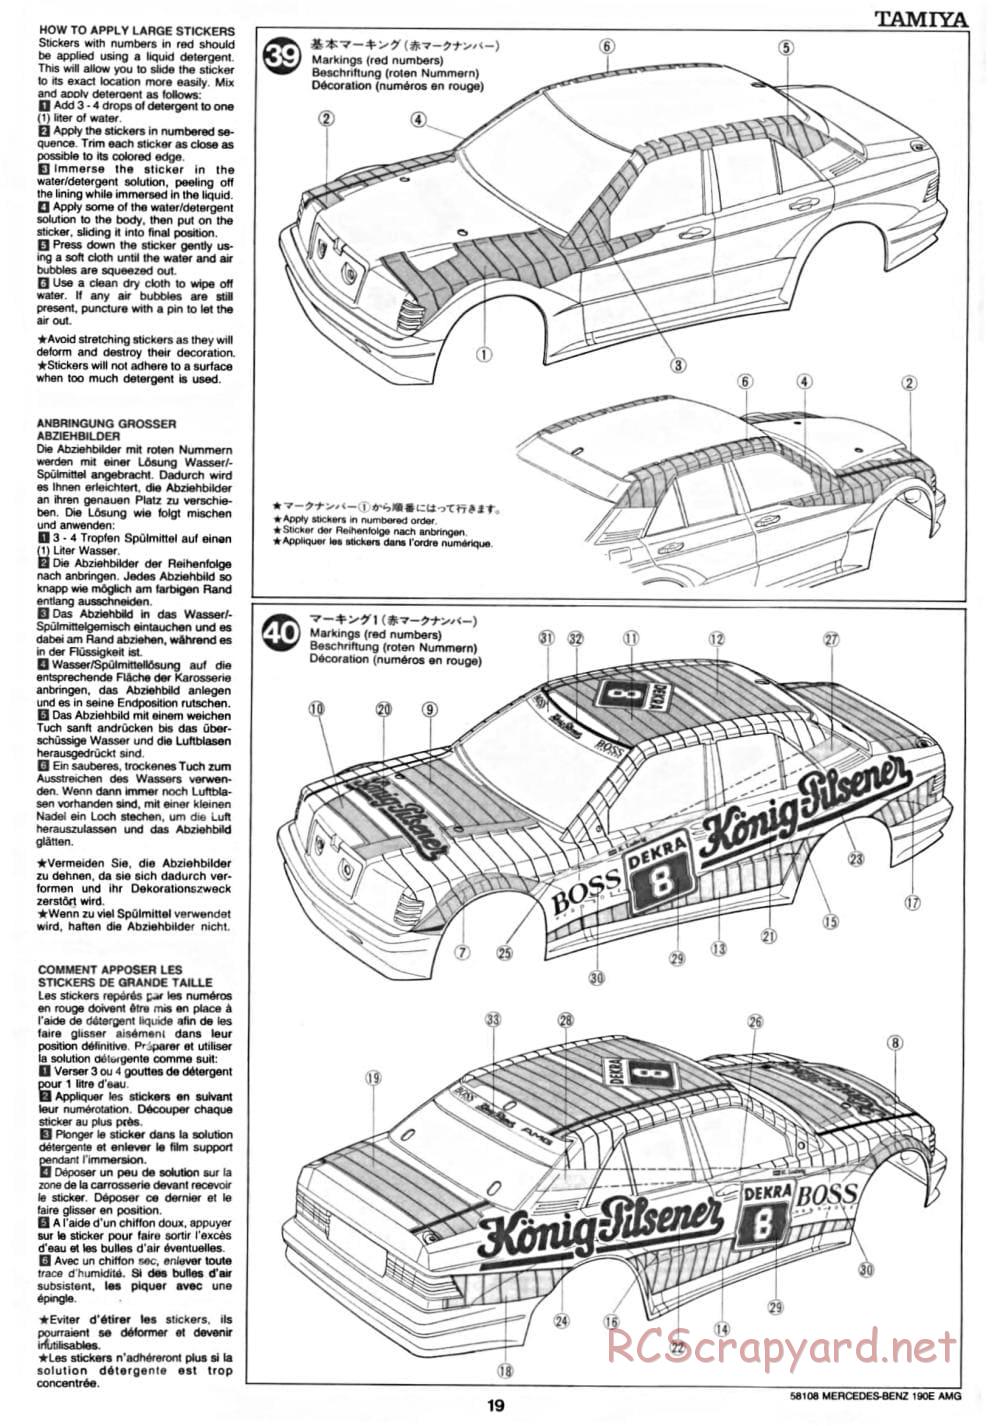 Tamiya - Mercedes Benz 190E Evo.II AMG - TA-01 Chassis - Manual - Page 19